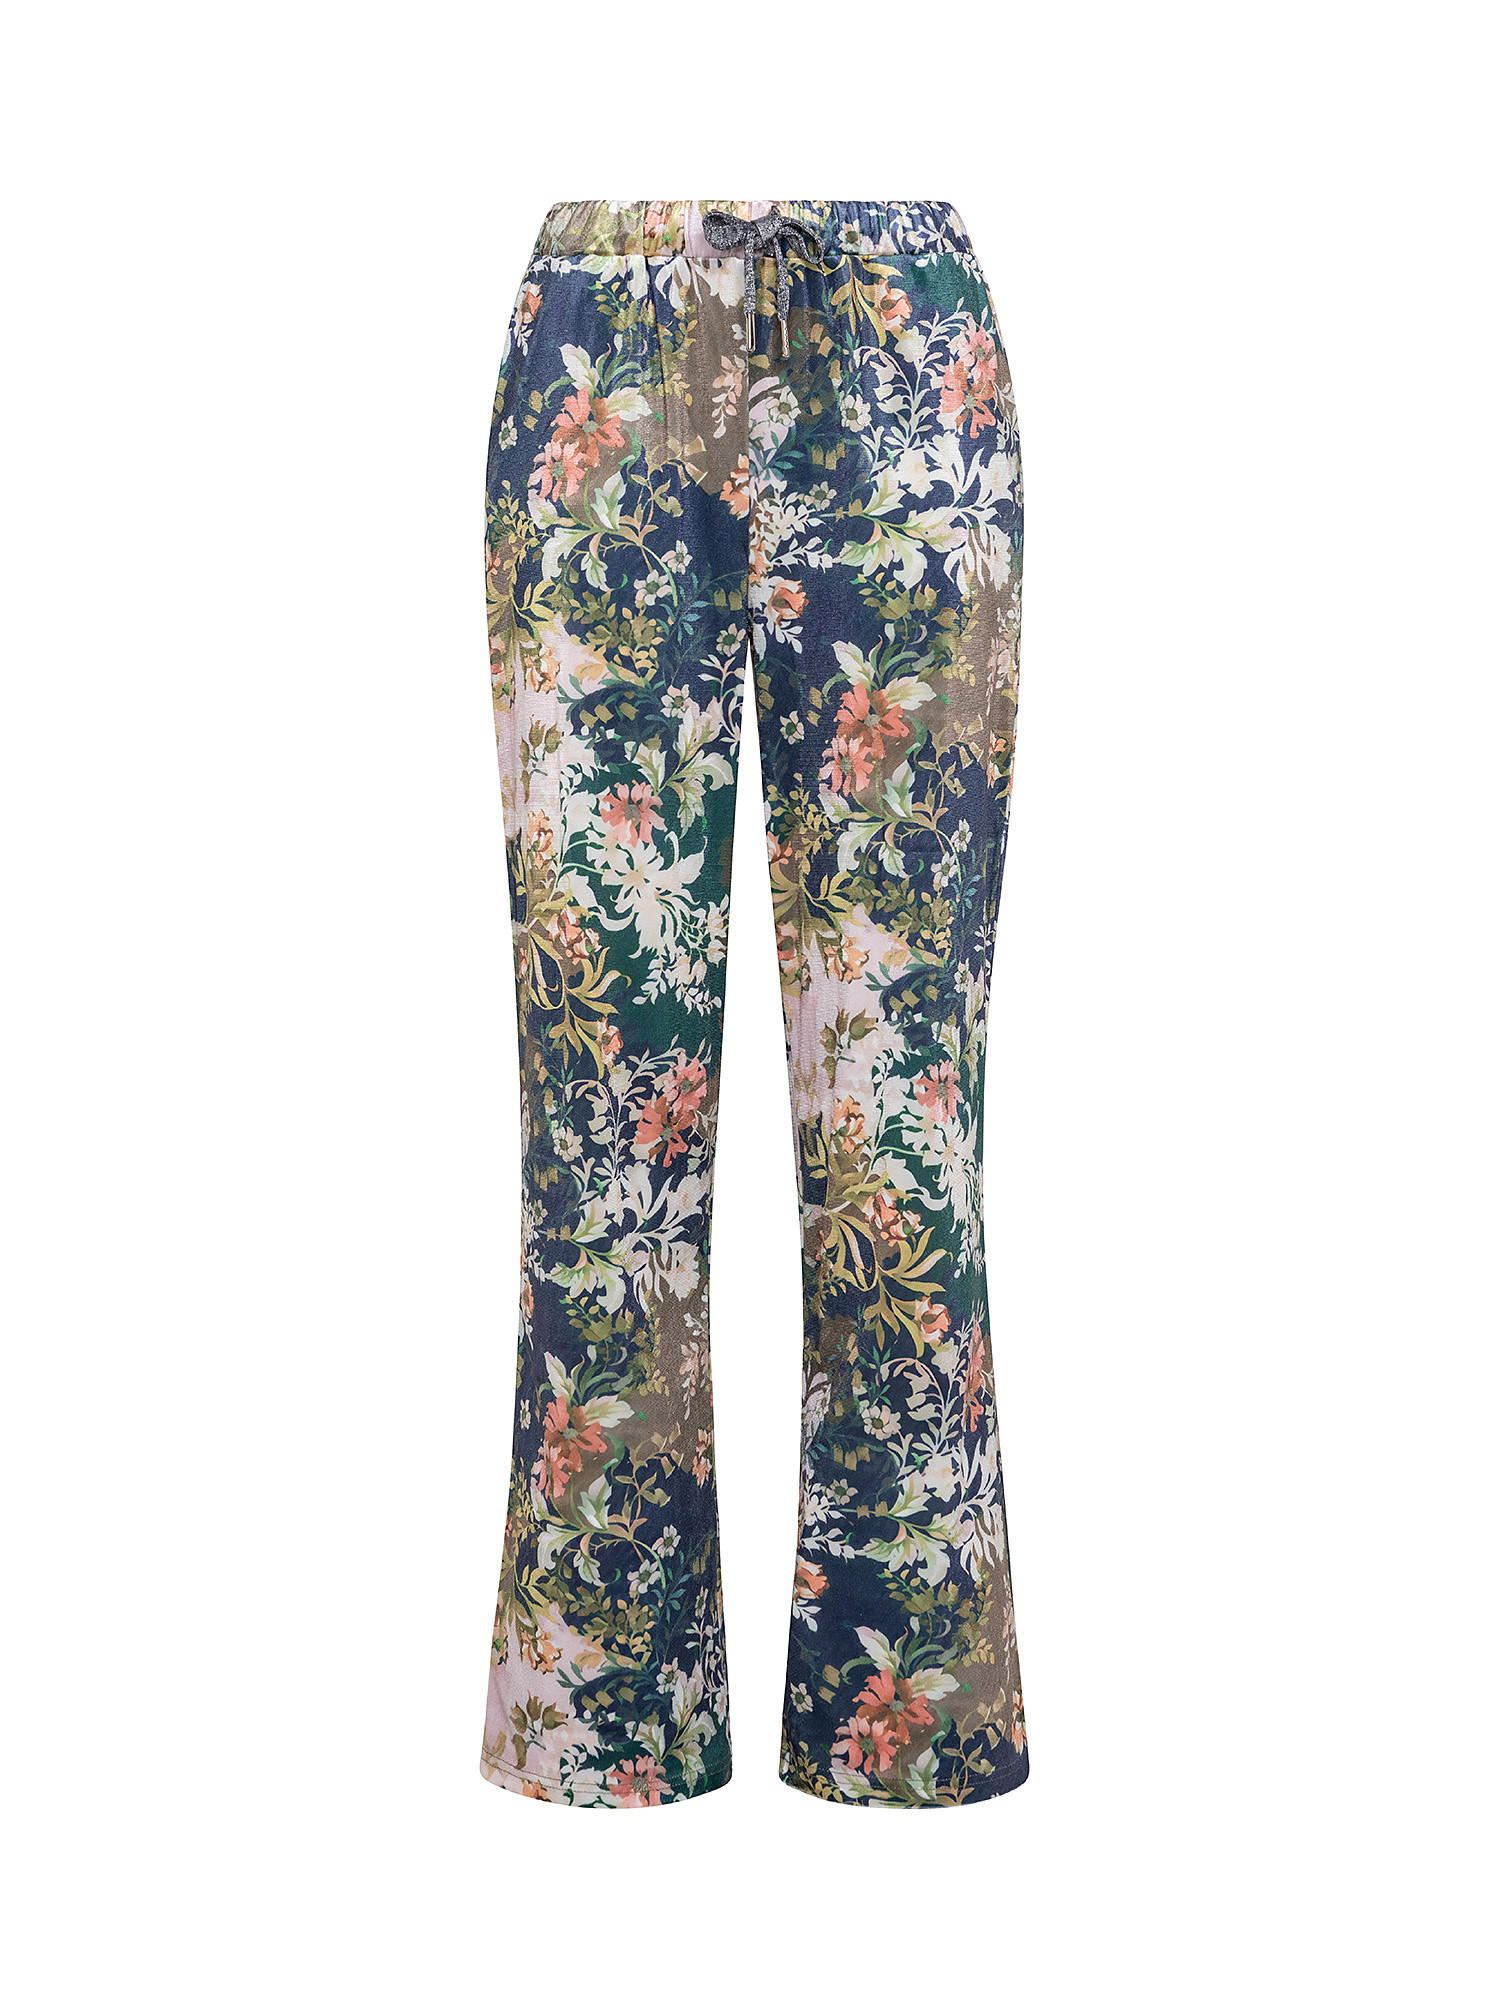 Велюровые брюки с цветочным принтом Koan Knitwear, мультиколор